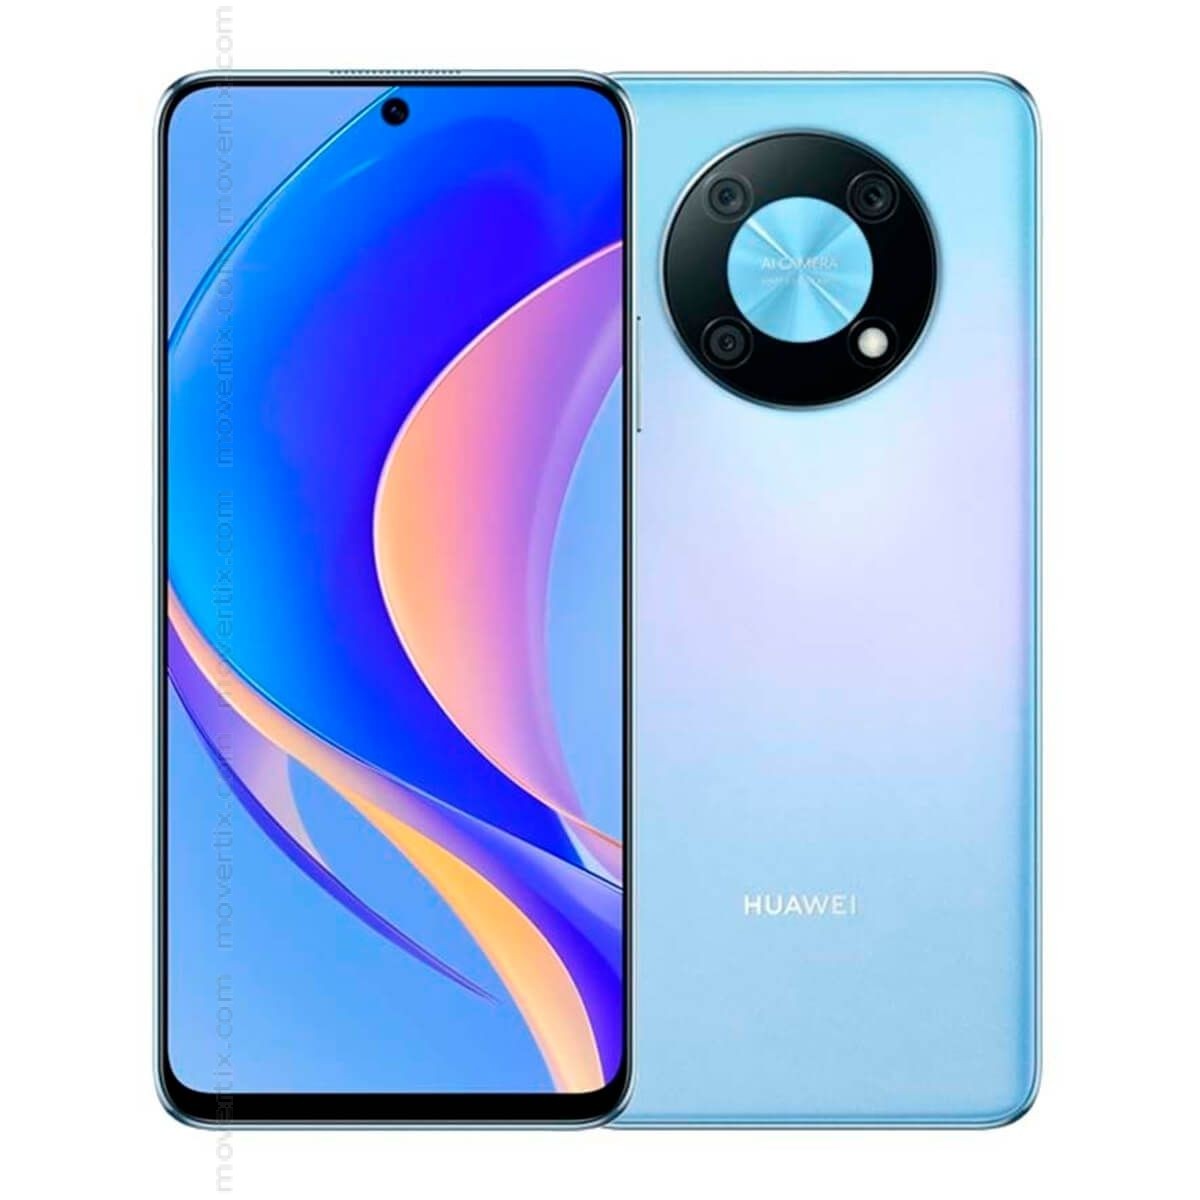 Great Barrier Reef bekennen klein Huawei Nova Y90 Dual SIM Crystal Blue 128GB and 6GB RAM (6941487267958) |  Movertix Mobile Phones Shop